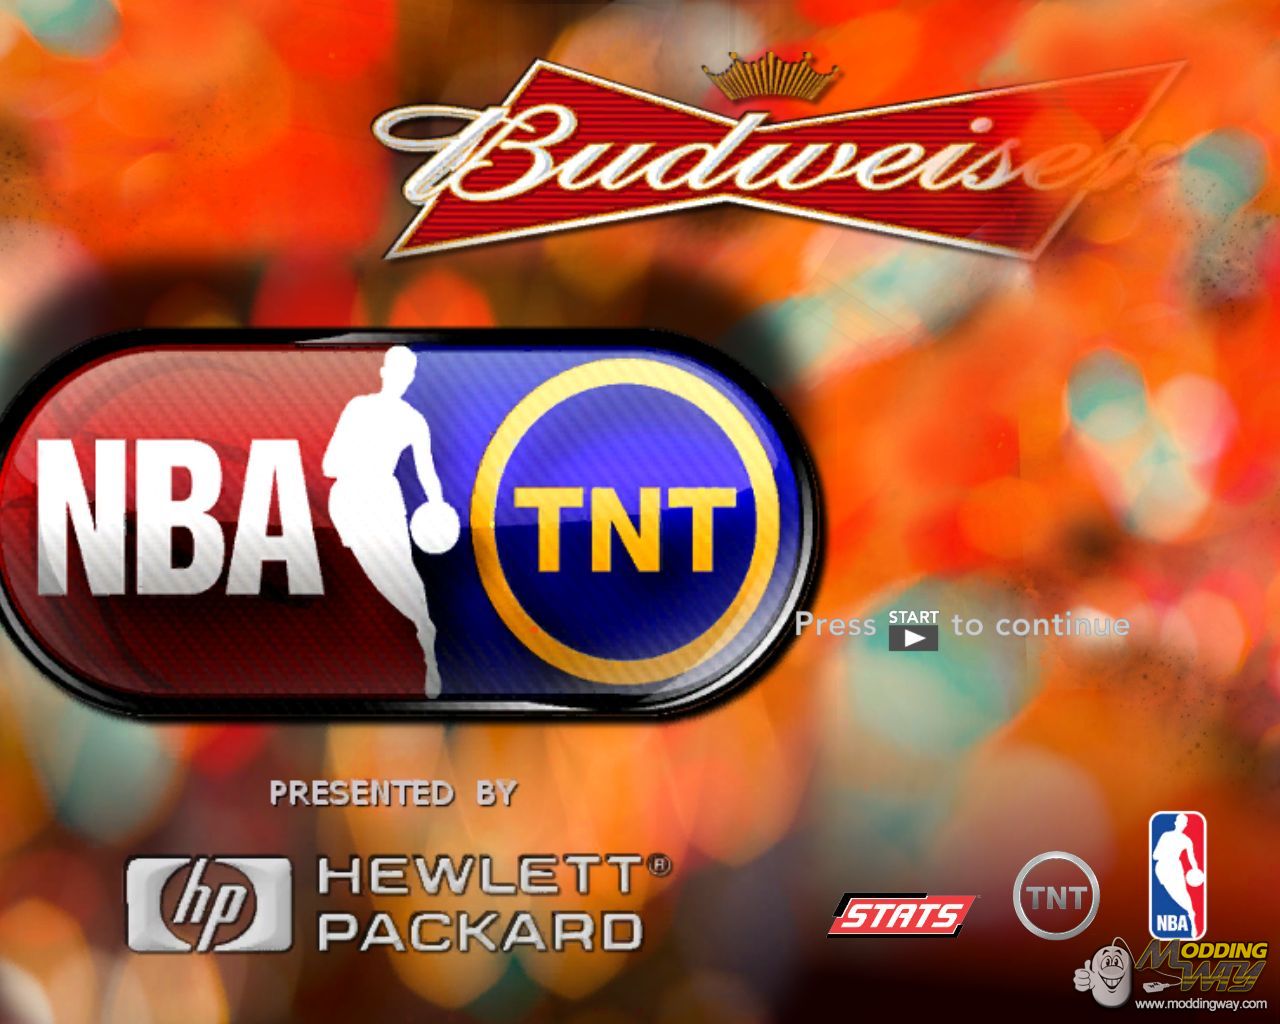 Alternative Title Screen "NBA on TNT" for mod "TNT FULL" - NBA 2K12 at